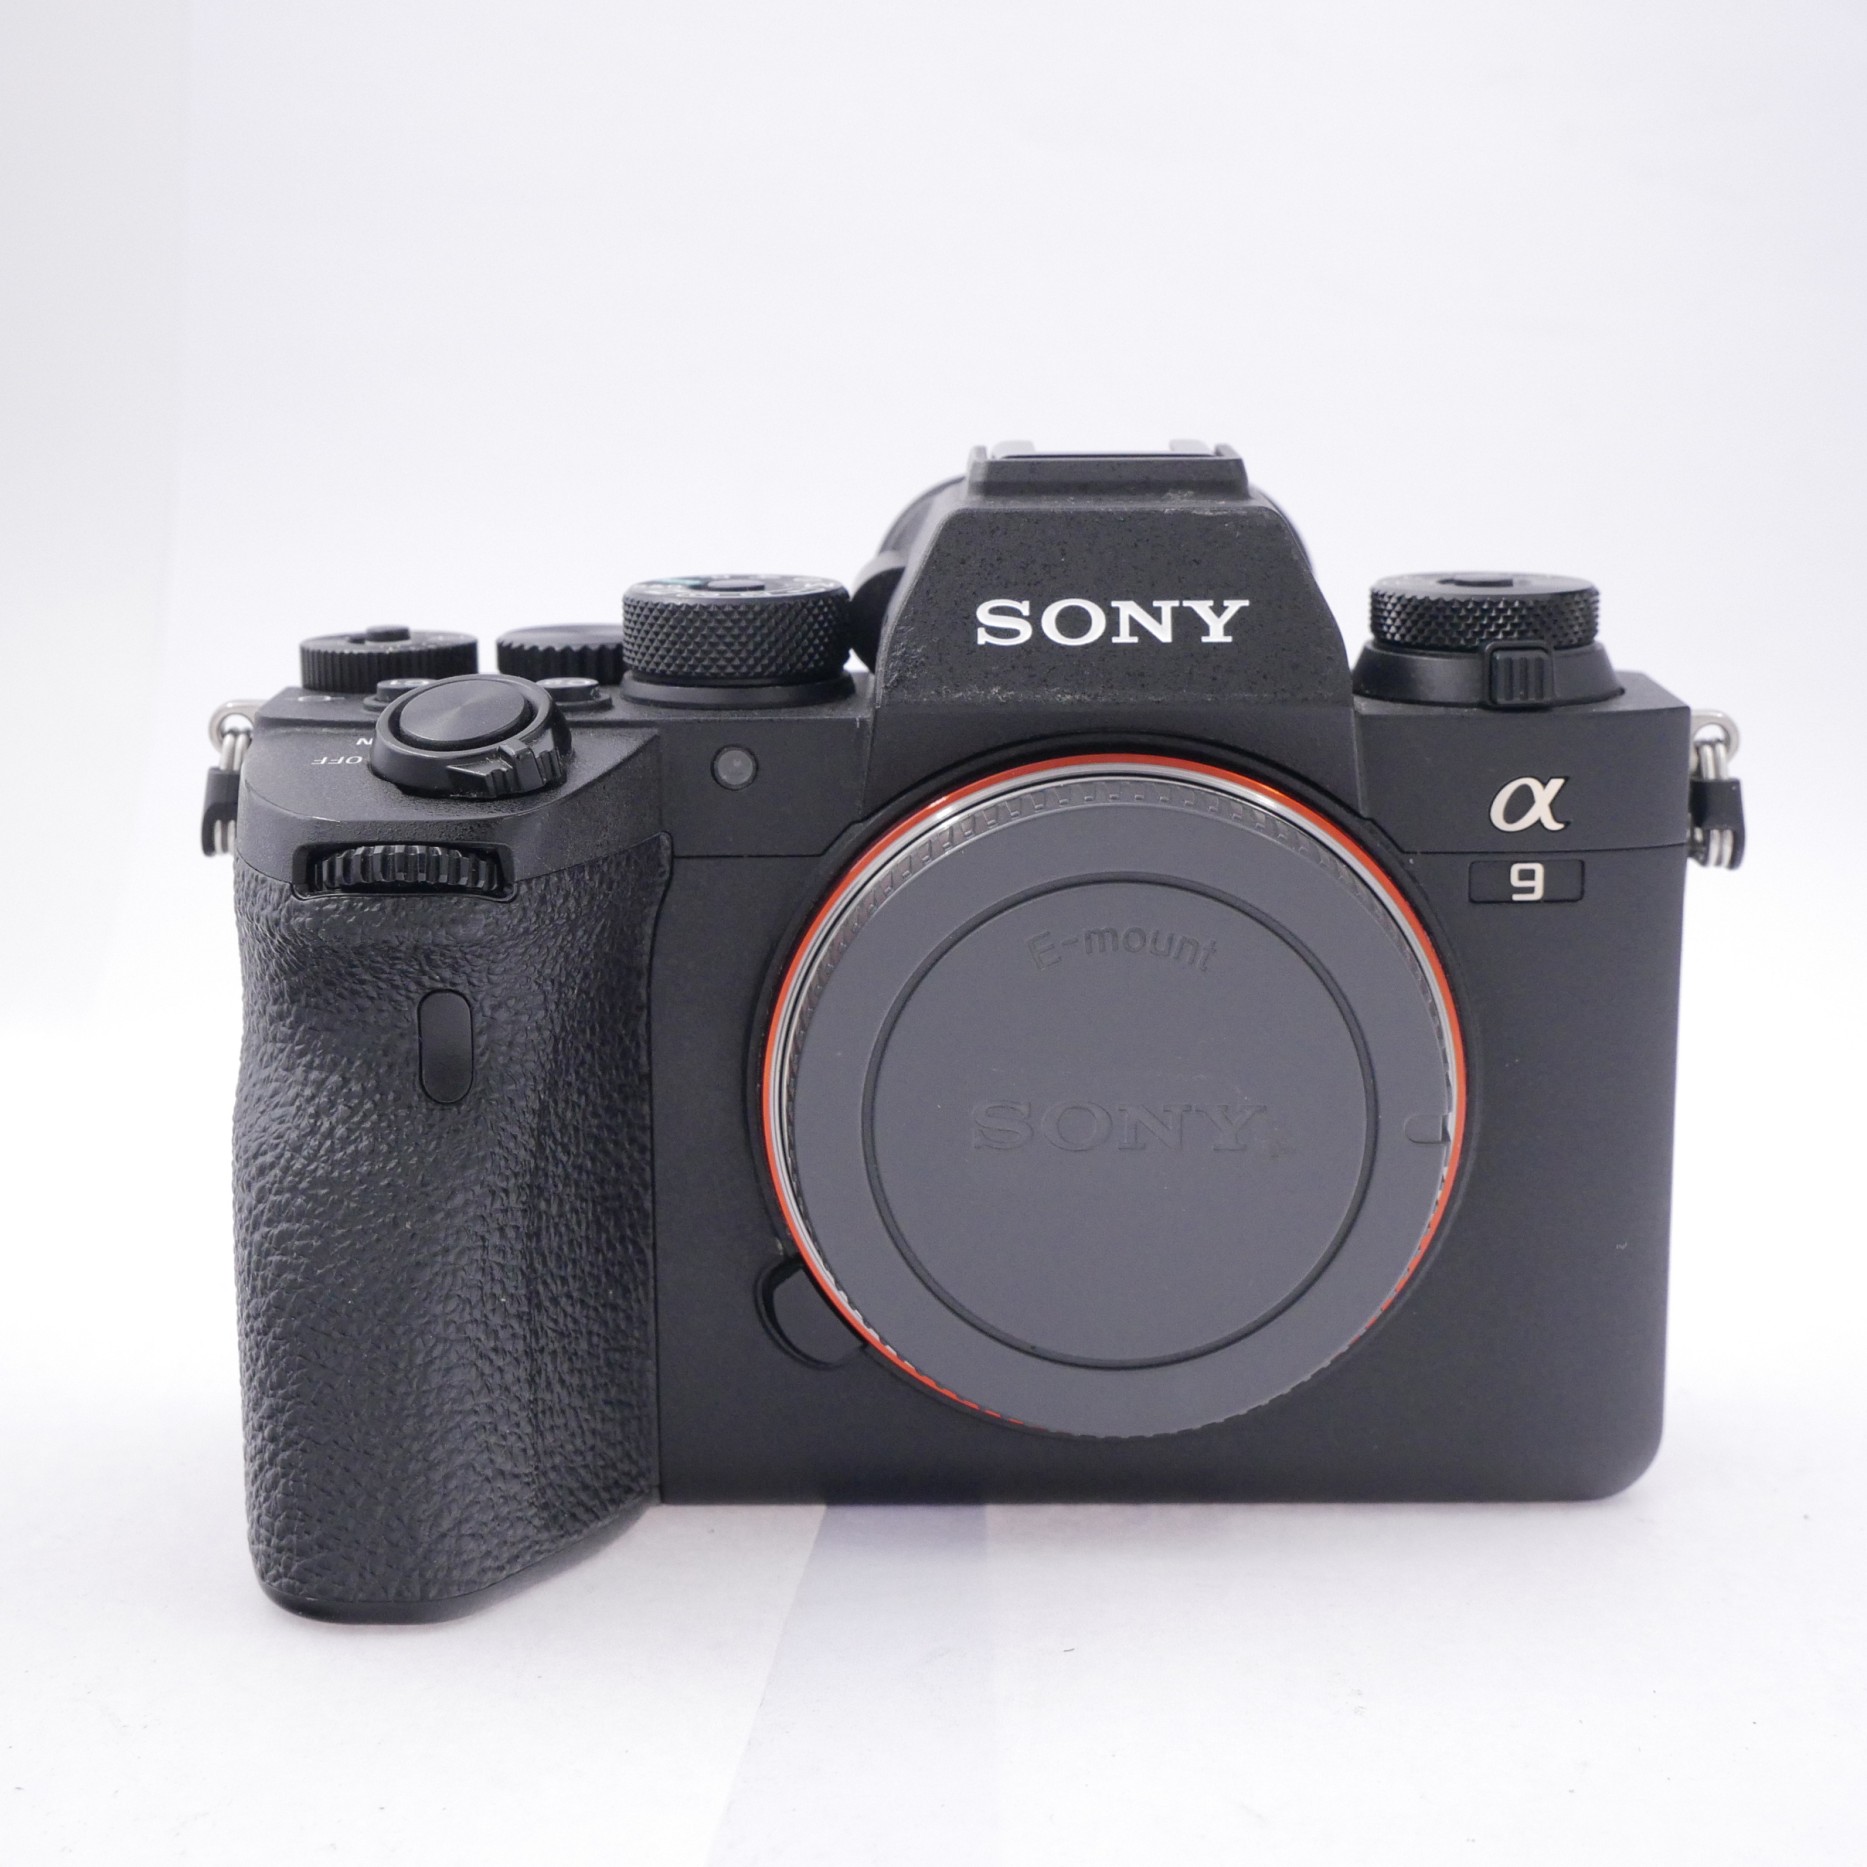 Sony A9 II Body Only 6,134 Frames